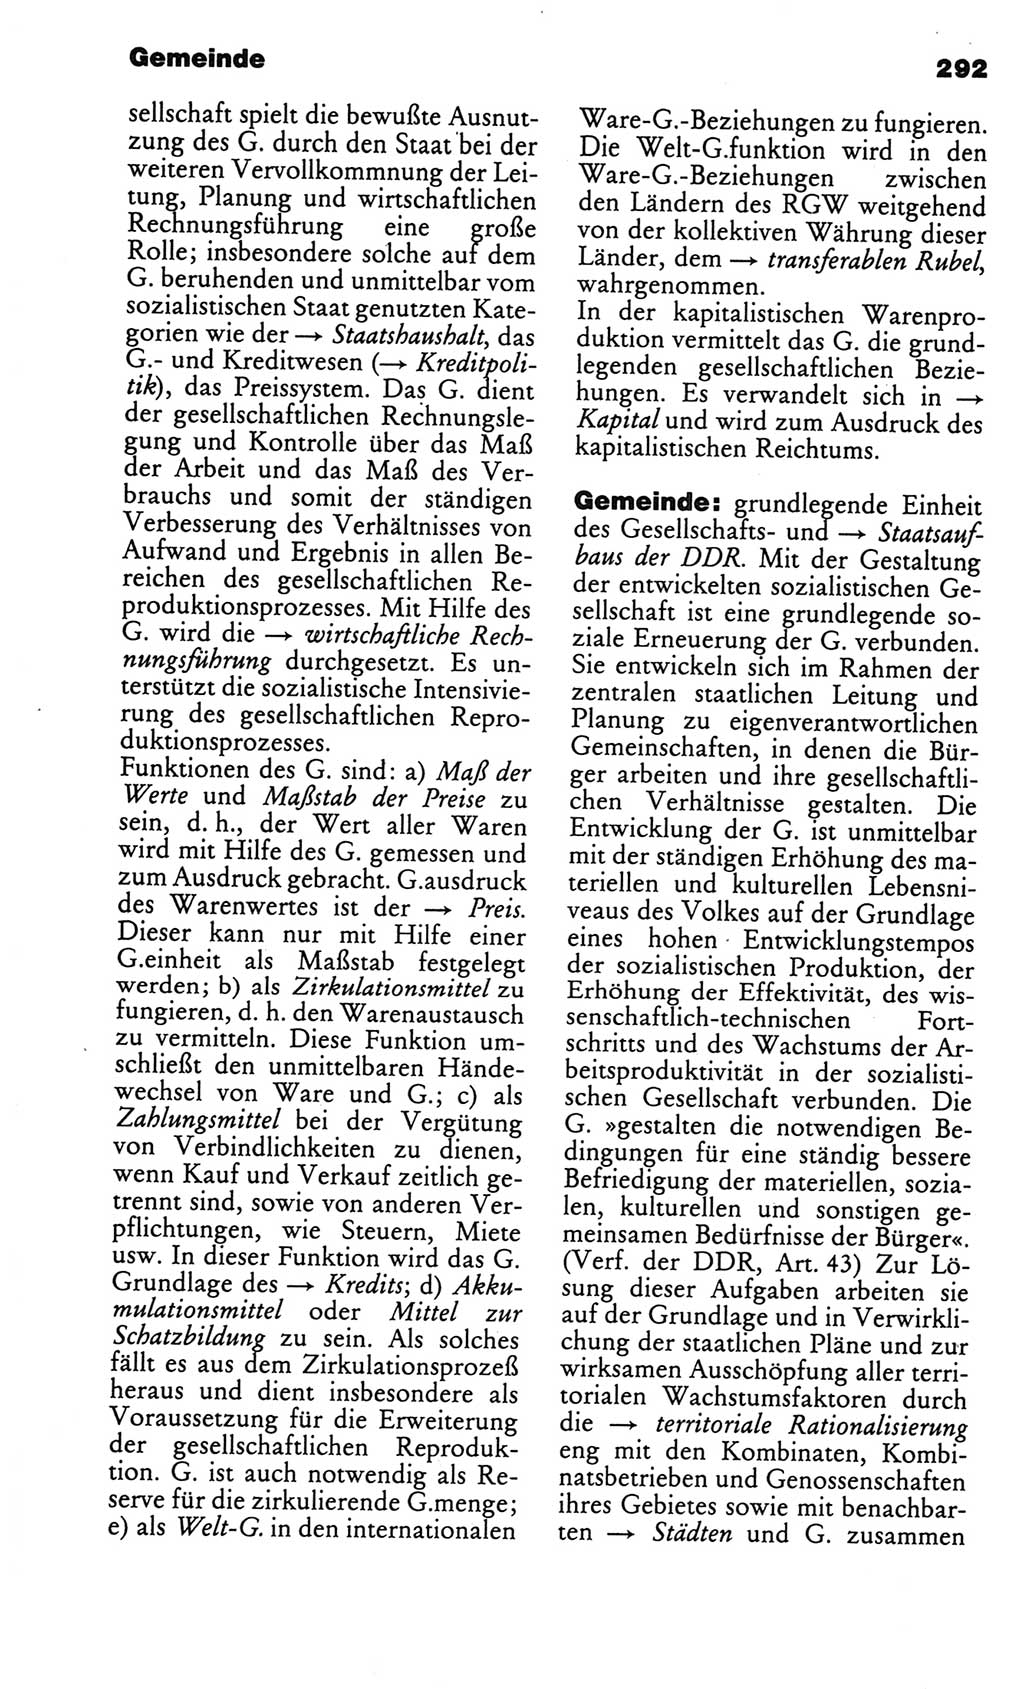 Kleines politisches Wörterbuch [Deutsche Demokratische Republik (DDR)] 1986, Seite 292 (Kl. pol. Wb. DDR 1986, S. 292)